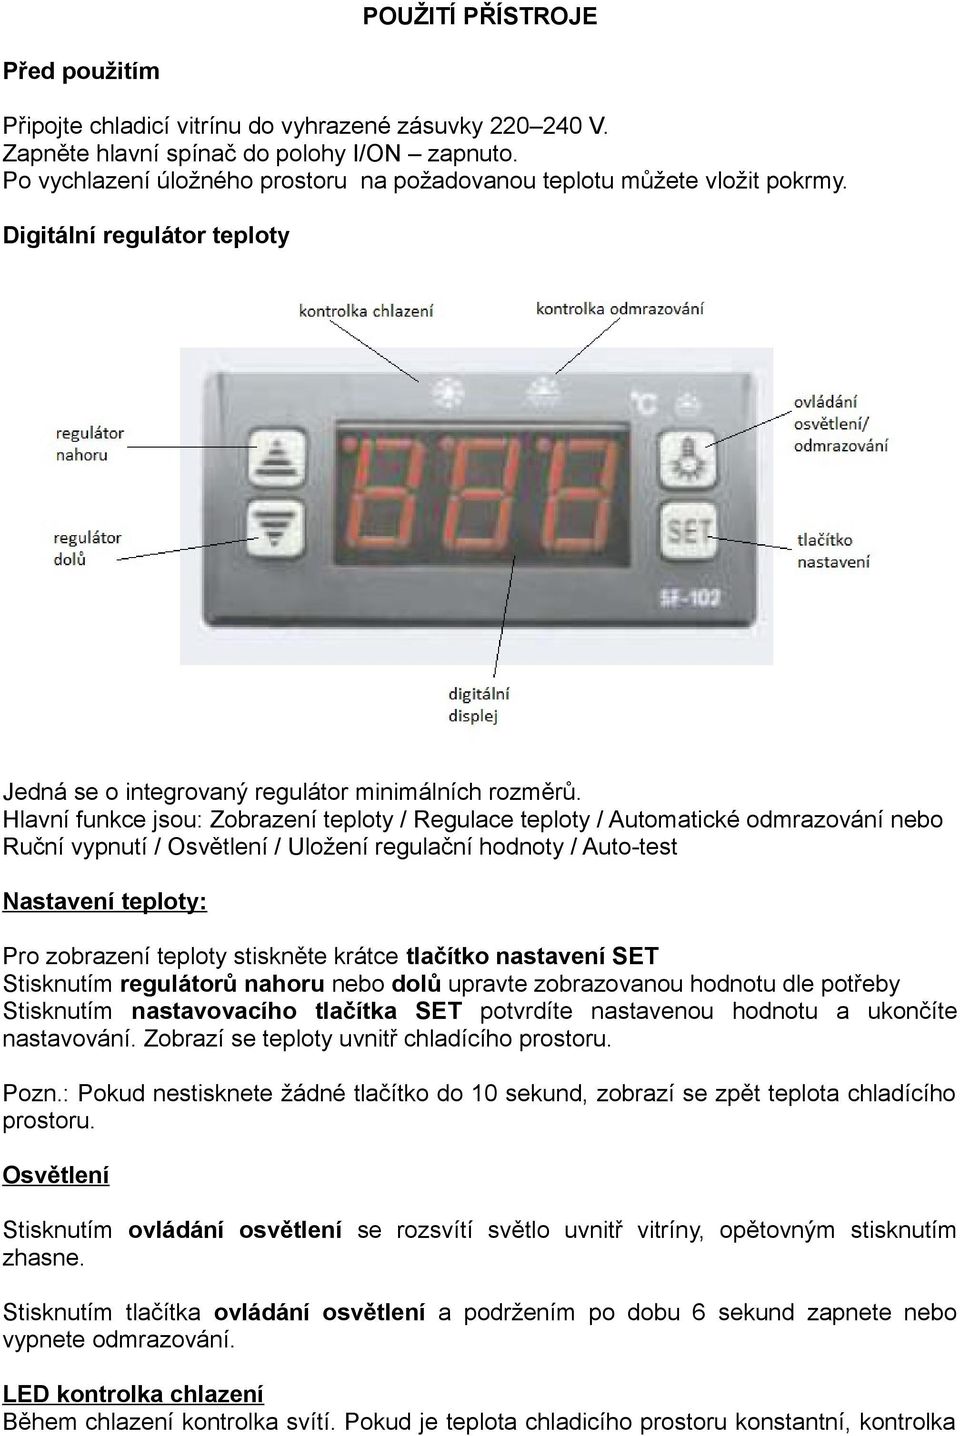 Hlavní funkce jsou: Zobrazení teploty / Regulace teploty / Automatické odmrazování nebo Ruční vypnutí / Osvětlení / Uložení regulační hodnoty / Auto-test Nastavení teploty: Pro zobrazení teploty